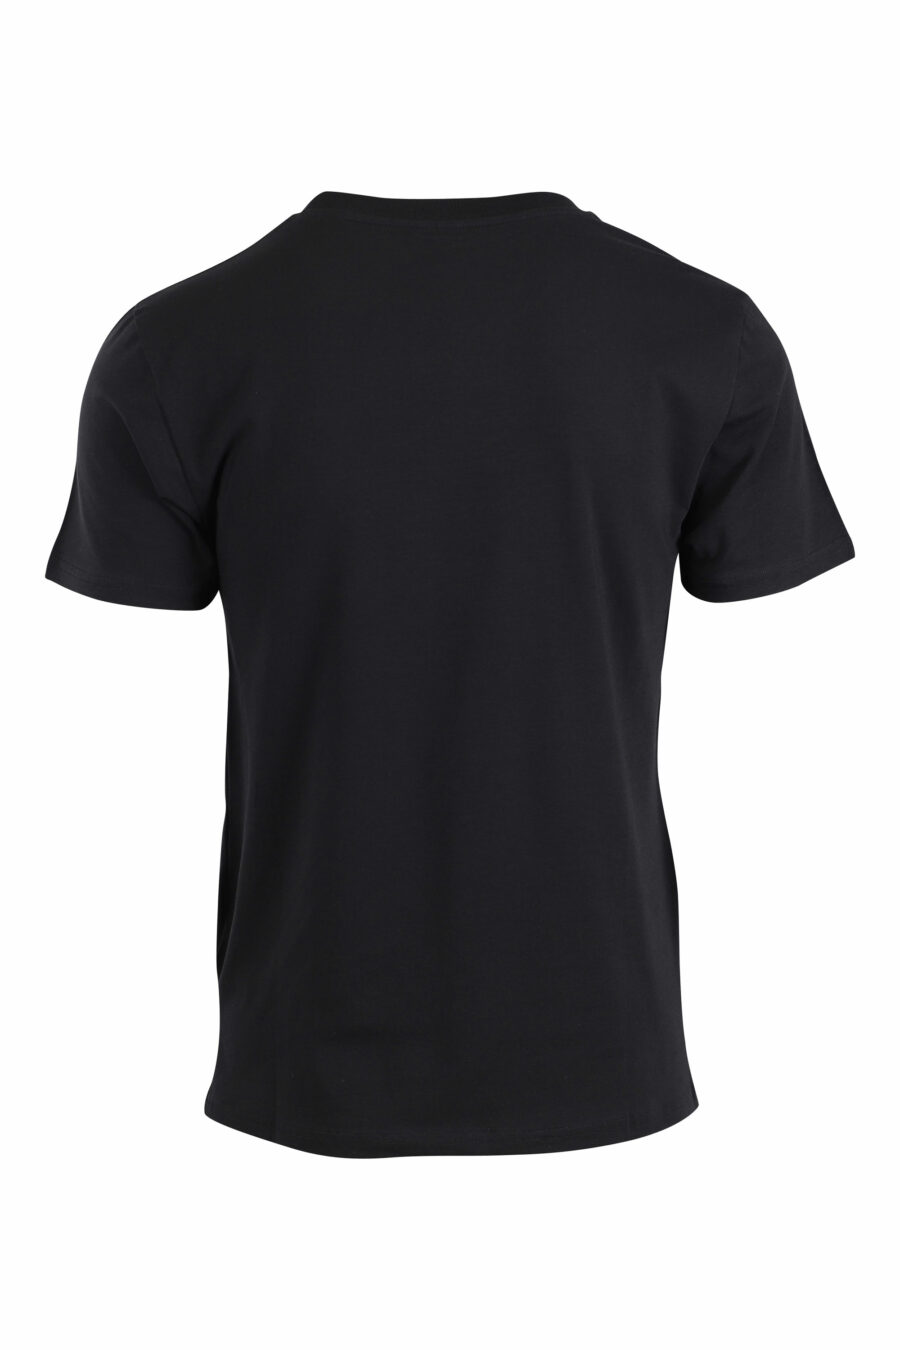 T-shirt preta com pequeno logótipo dourado com strass - IMG 2649